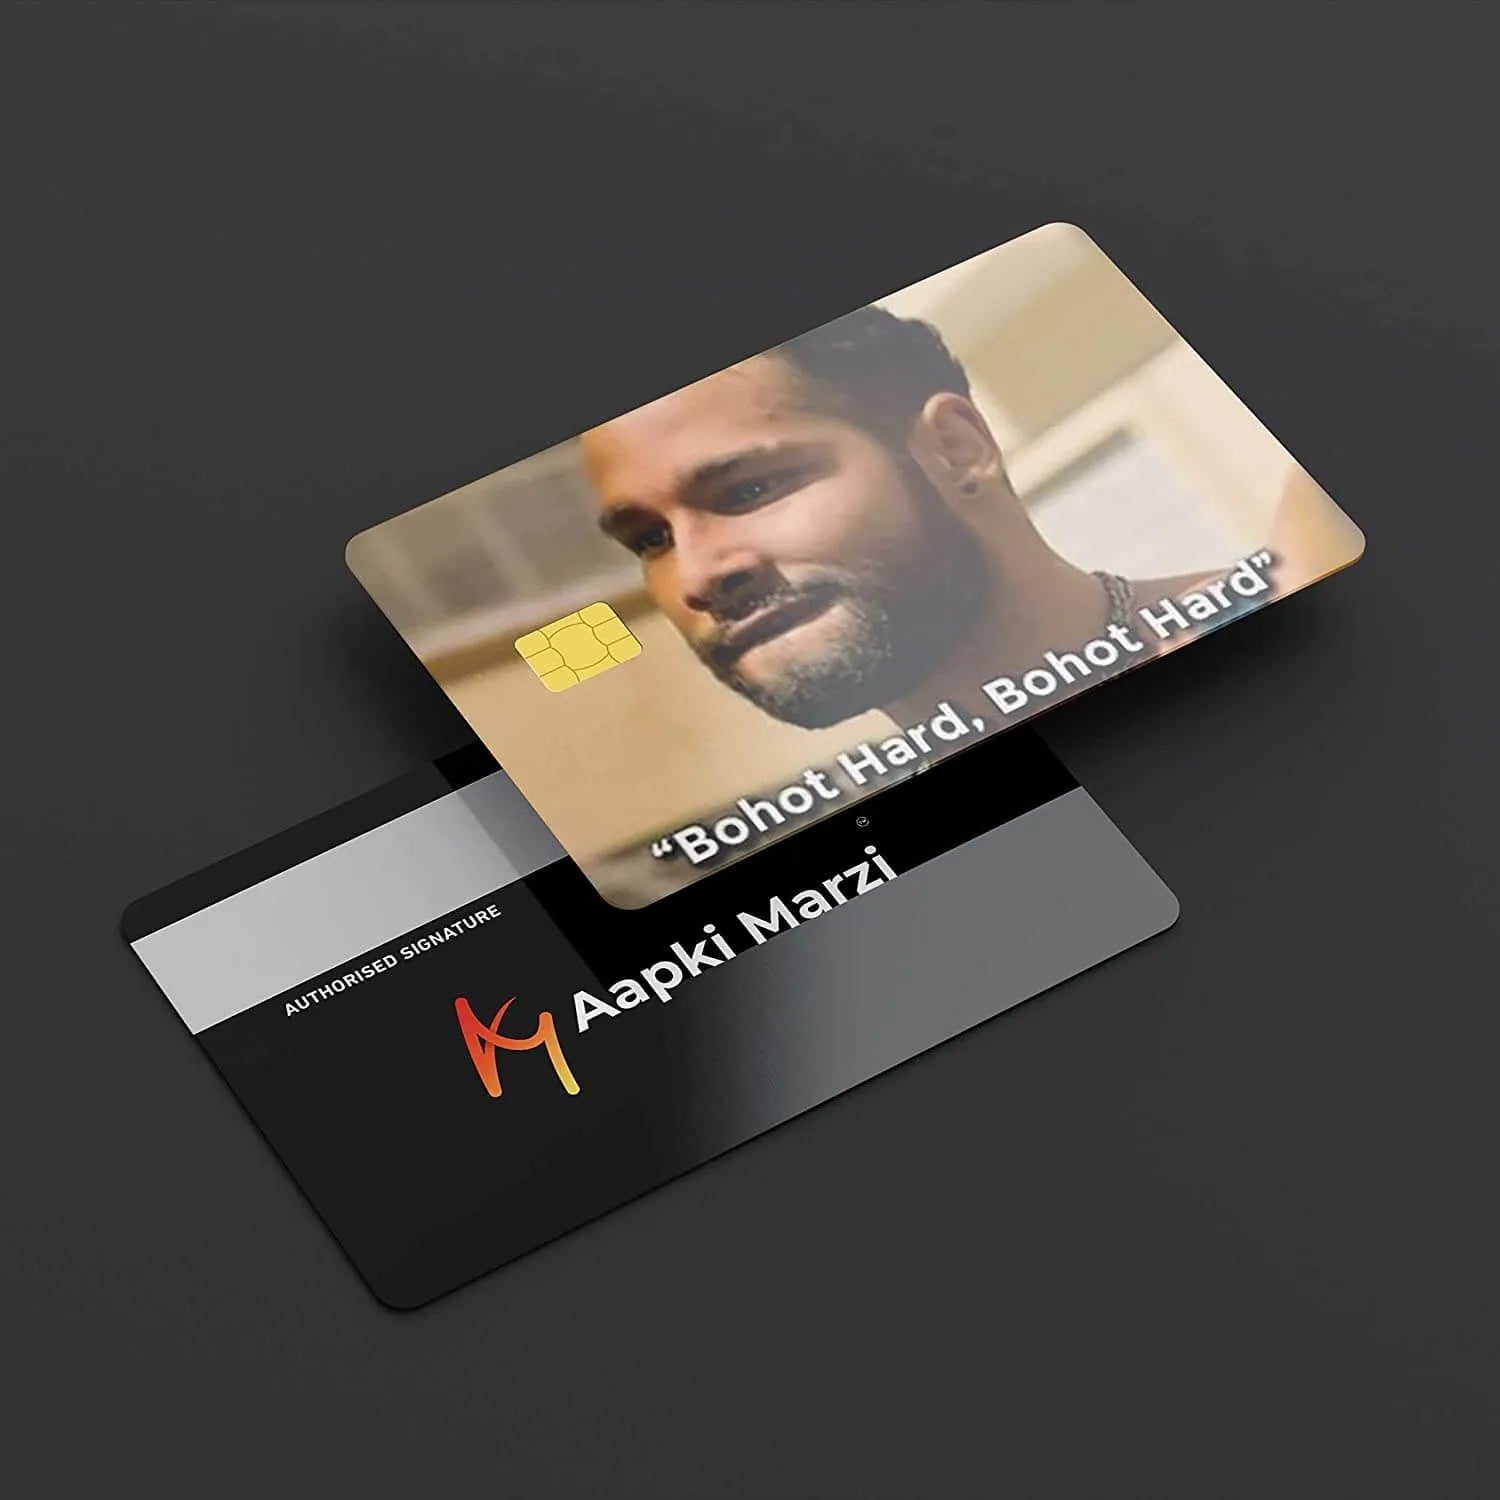 Bohot Hard credit card skins